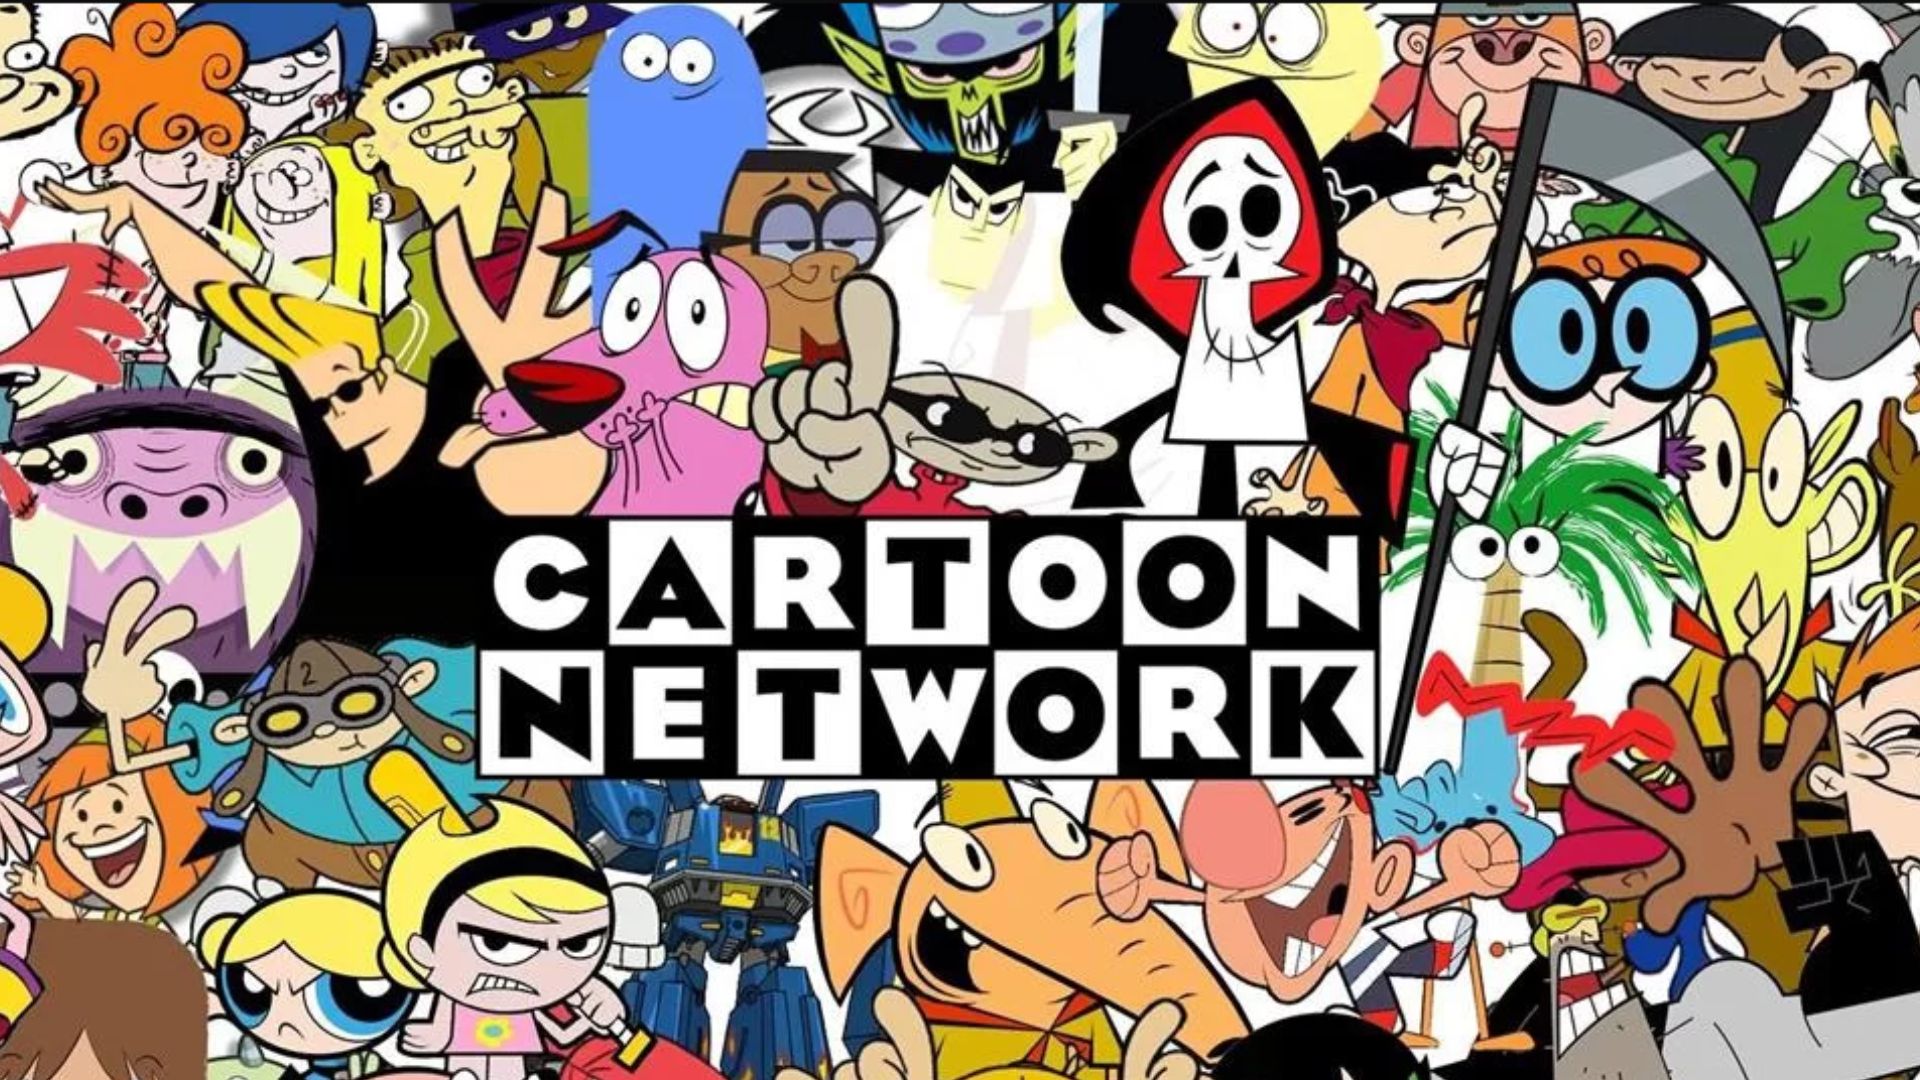 Cartoon Network Brasil on X: Você não entenderia meu processo de criação   / X